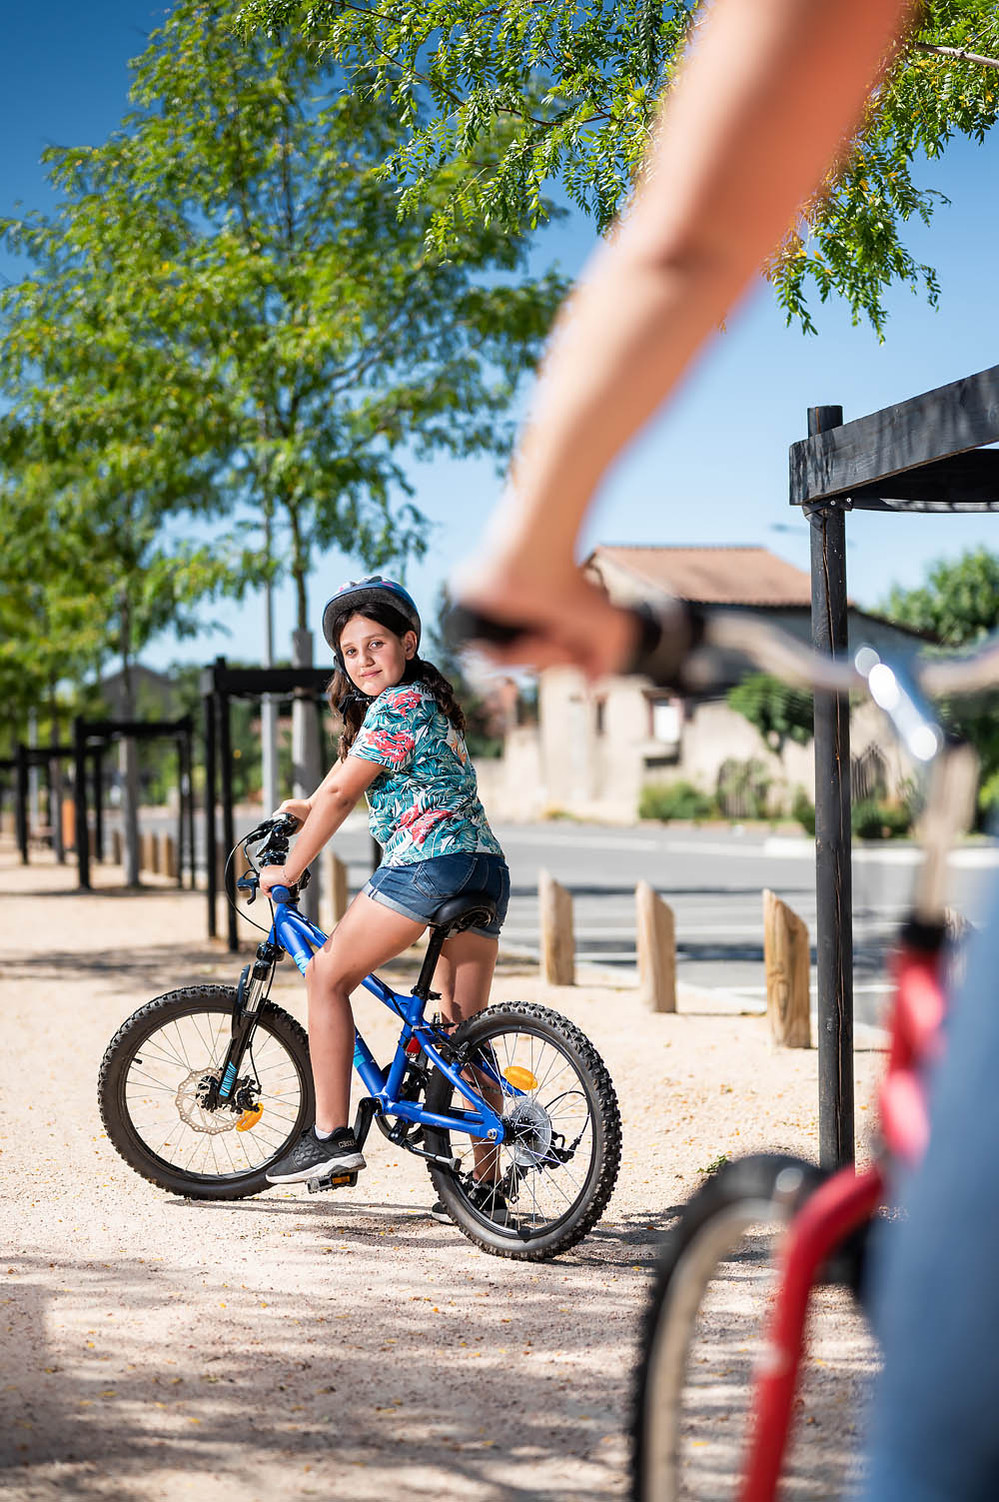 Reportage photo enfant sur vélo qui regarde au dessus de son épaule
Lotfi Dakhli Photographe Lyon